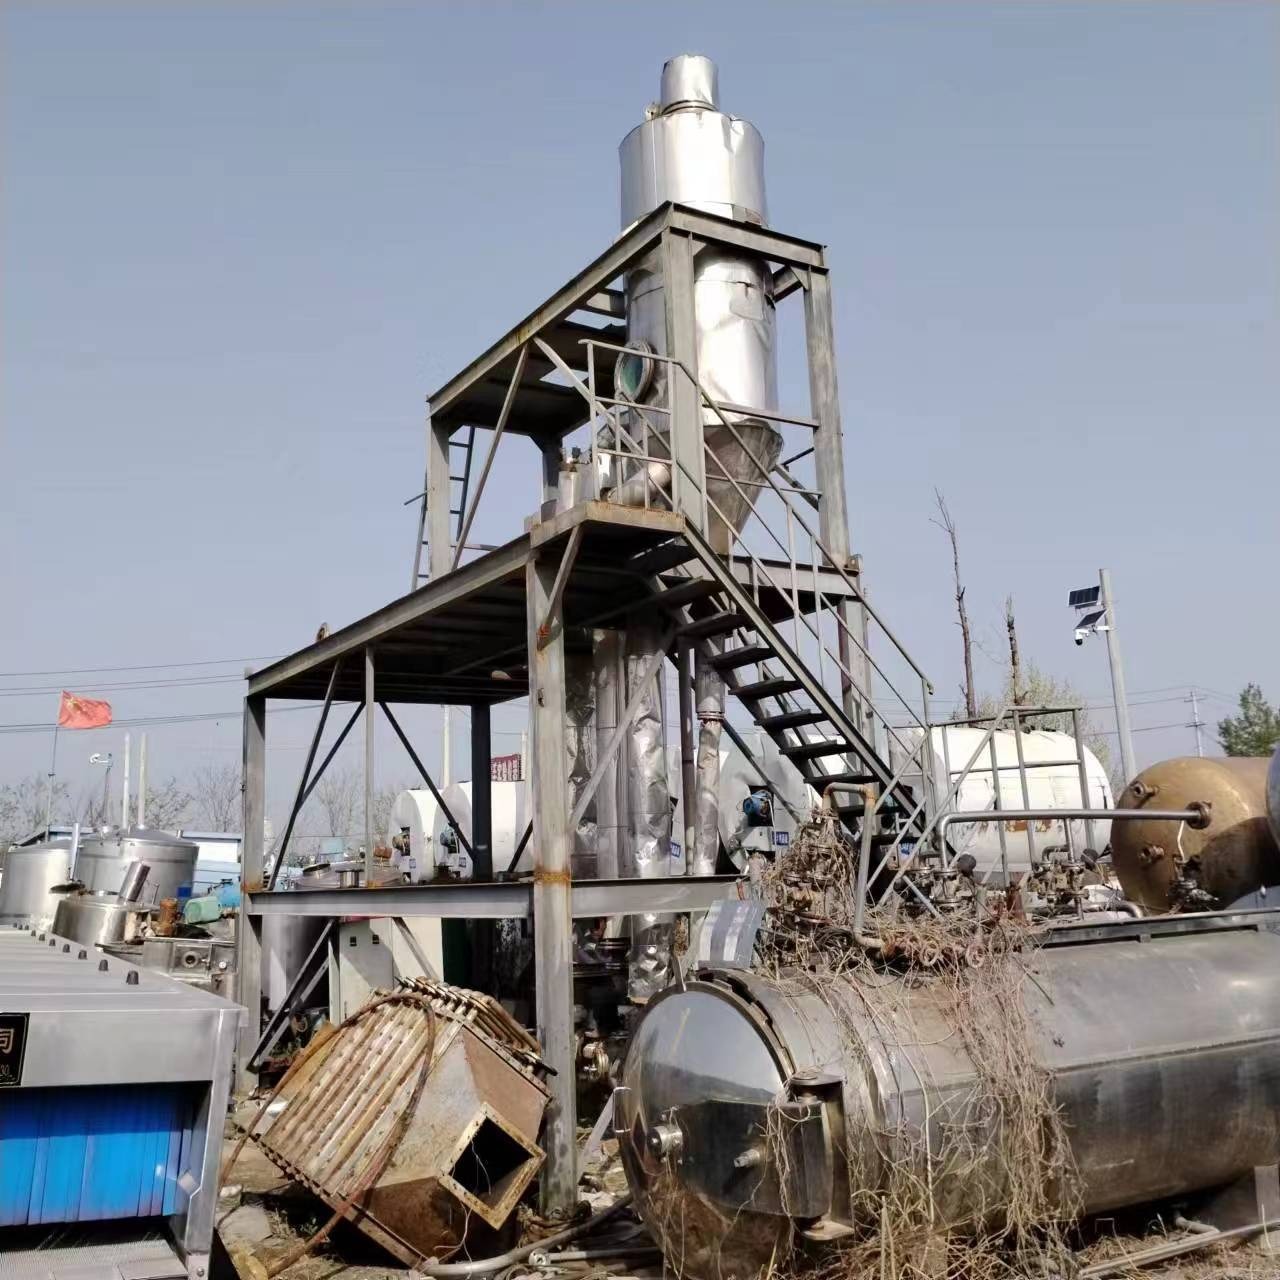 兴畅出售二手蒸发器 3吨MVR蒸发器 降膜蒸发器 单效蒸发器 各种蒸发器 化工设备 FC-98